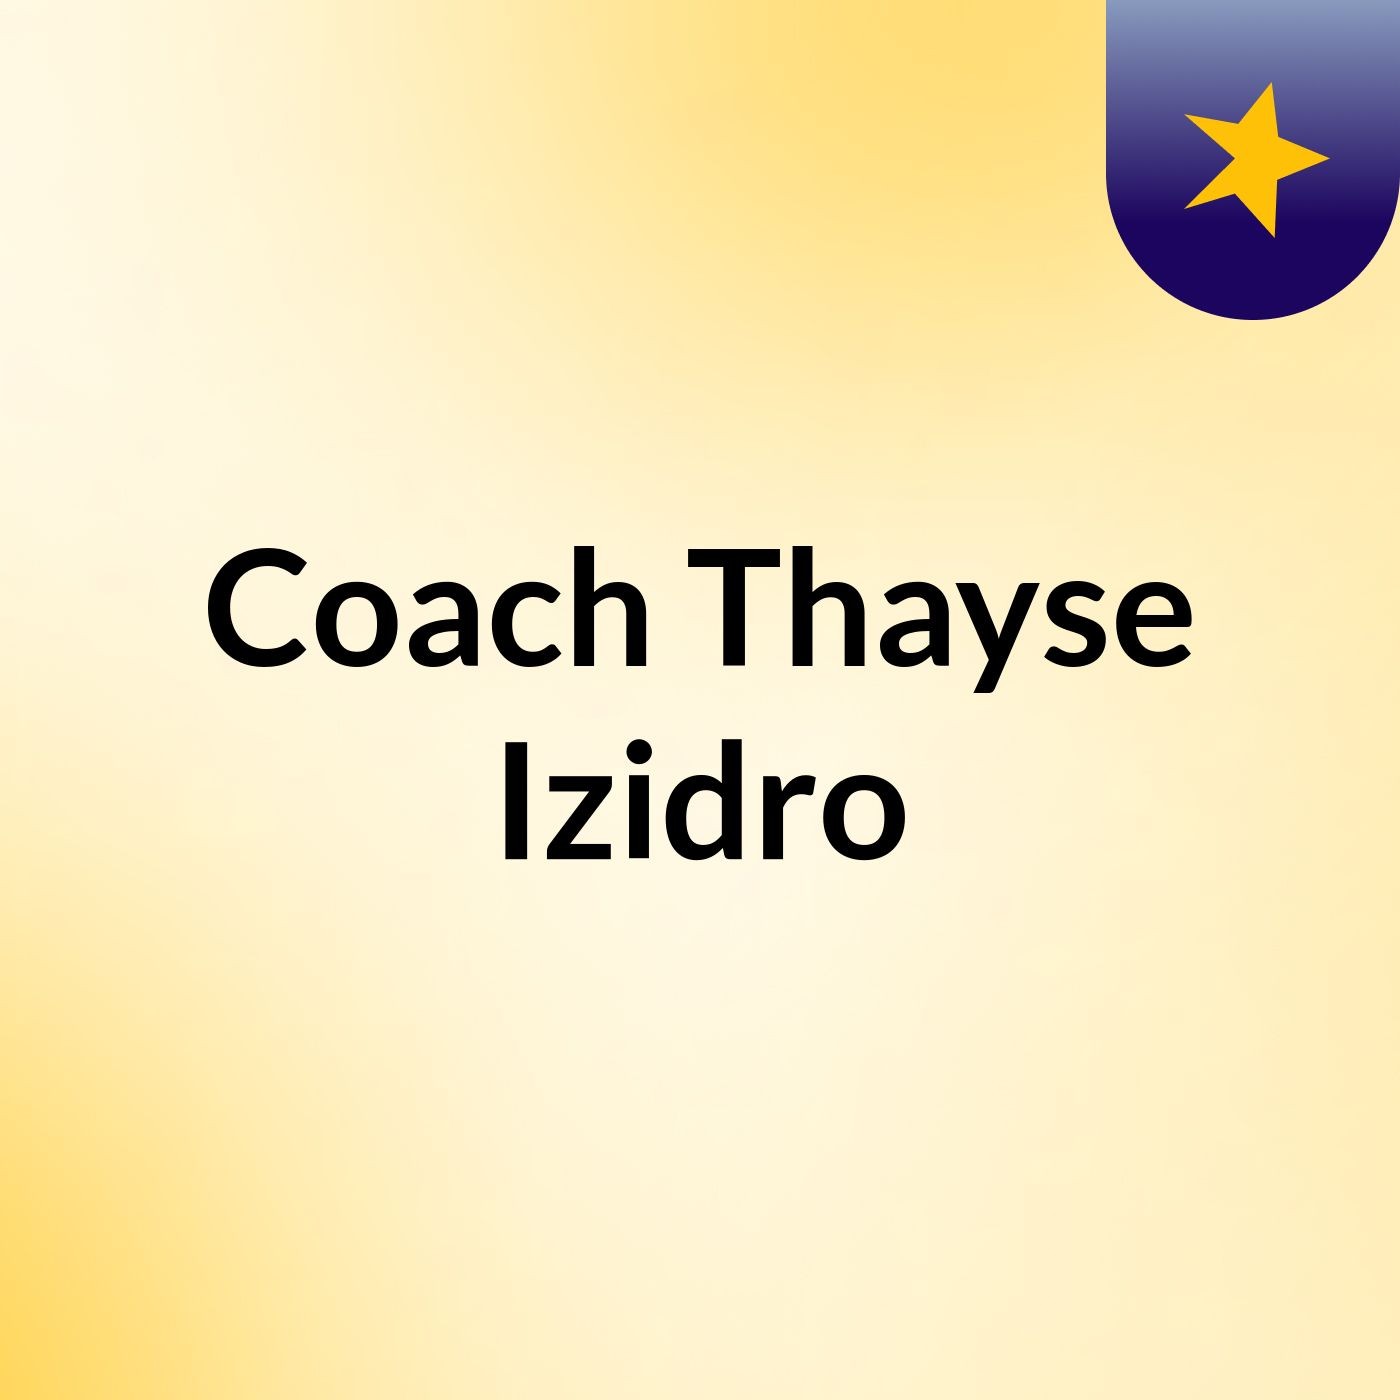 Coach Thayse Izidro